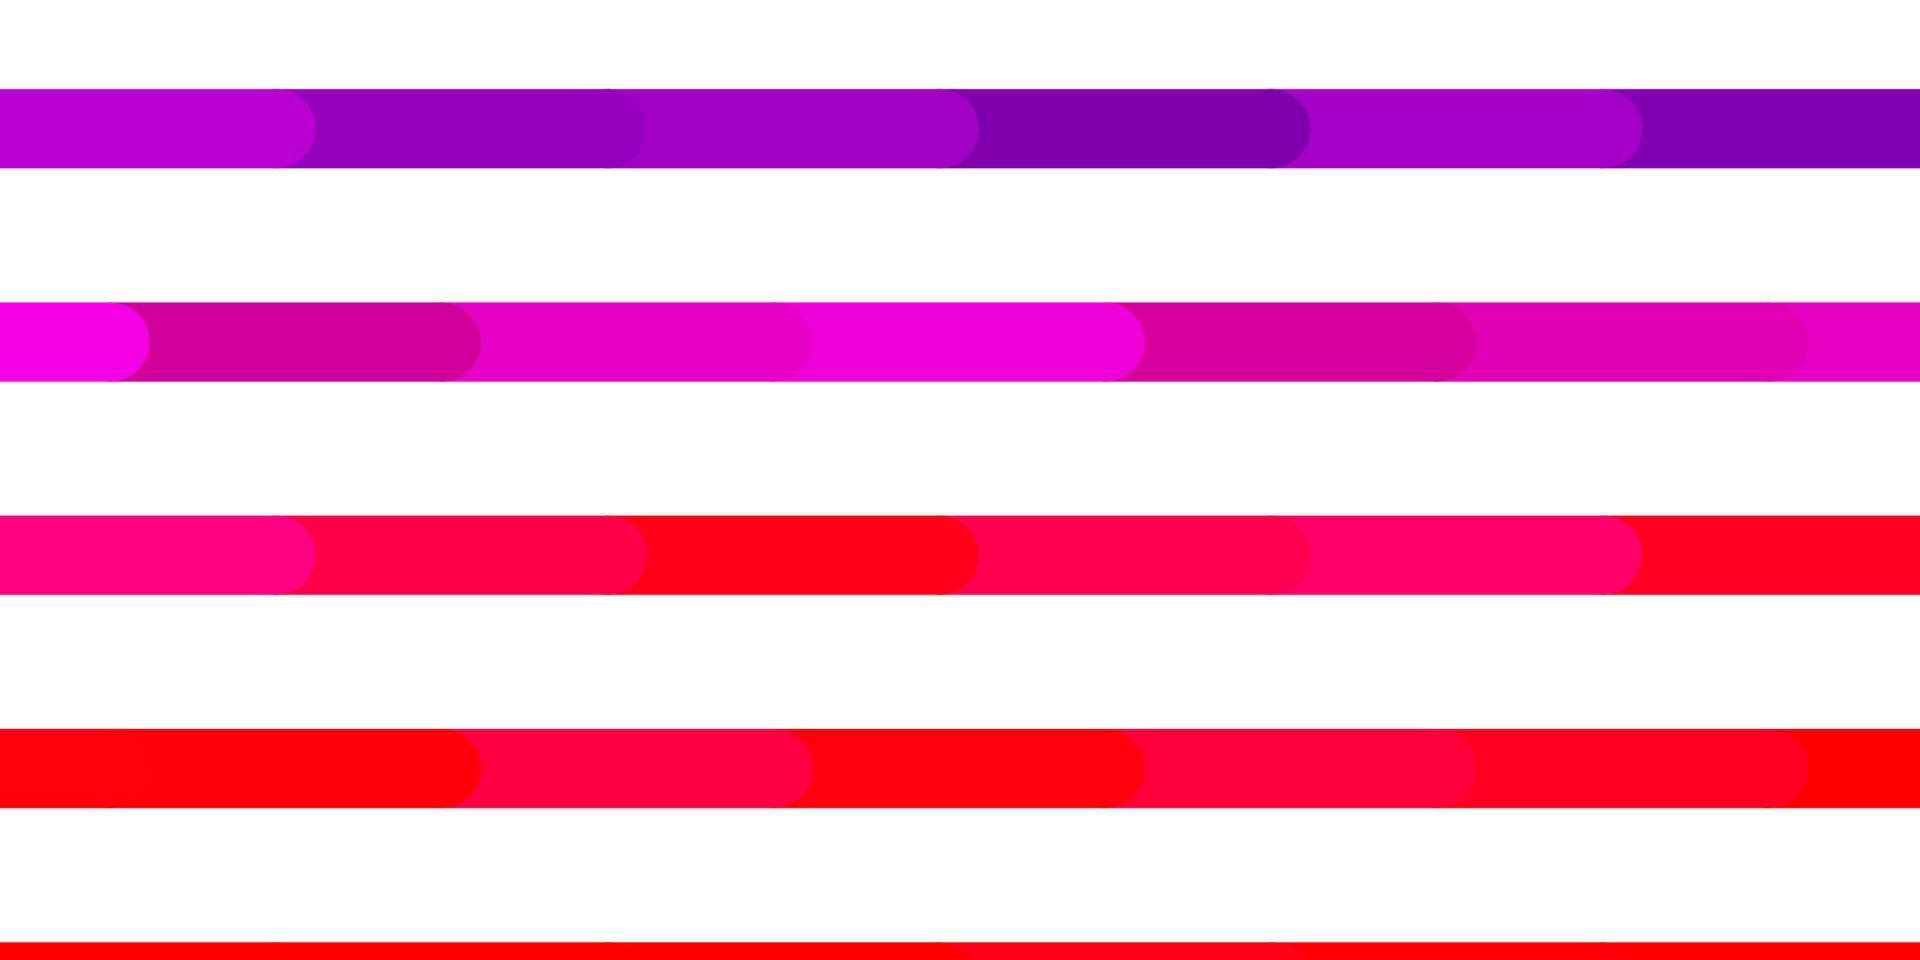 layout de vetor roxo, rosa claro com linhas.